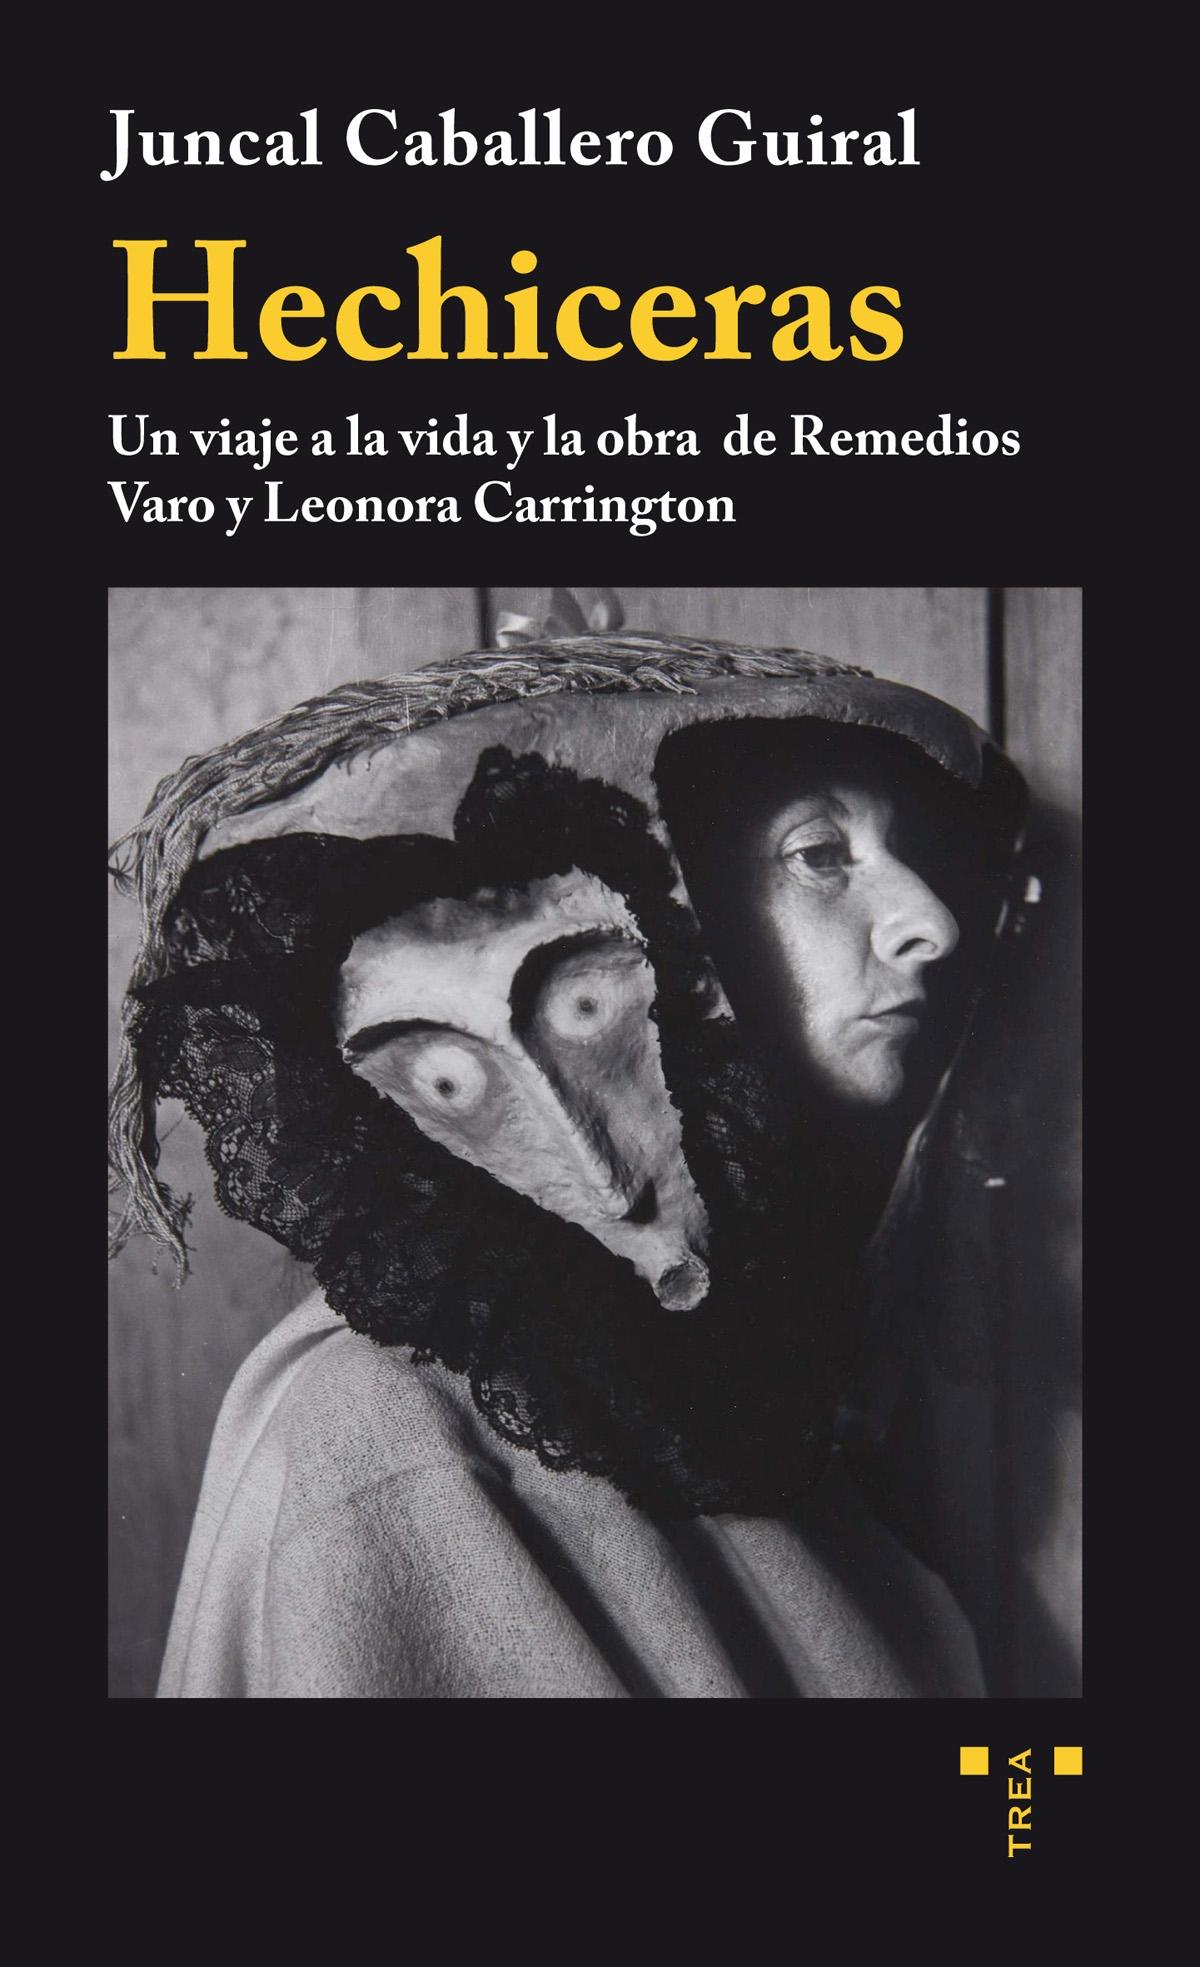 Hechiceras "Un viaje a la vida y la obra de Remedios Varo y Leonora Carrington"